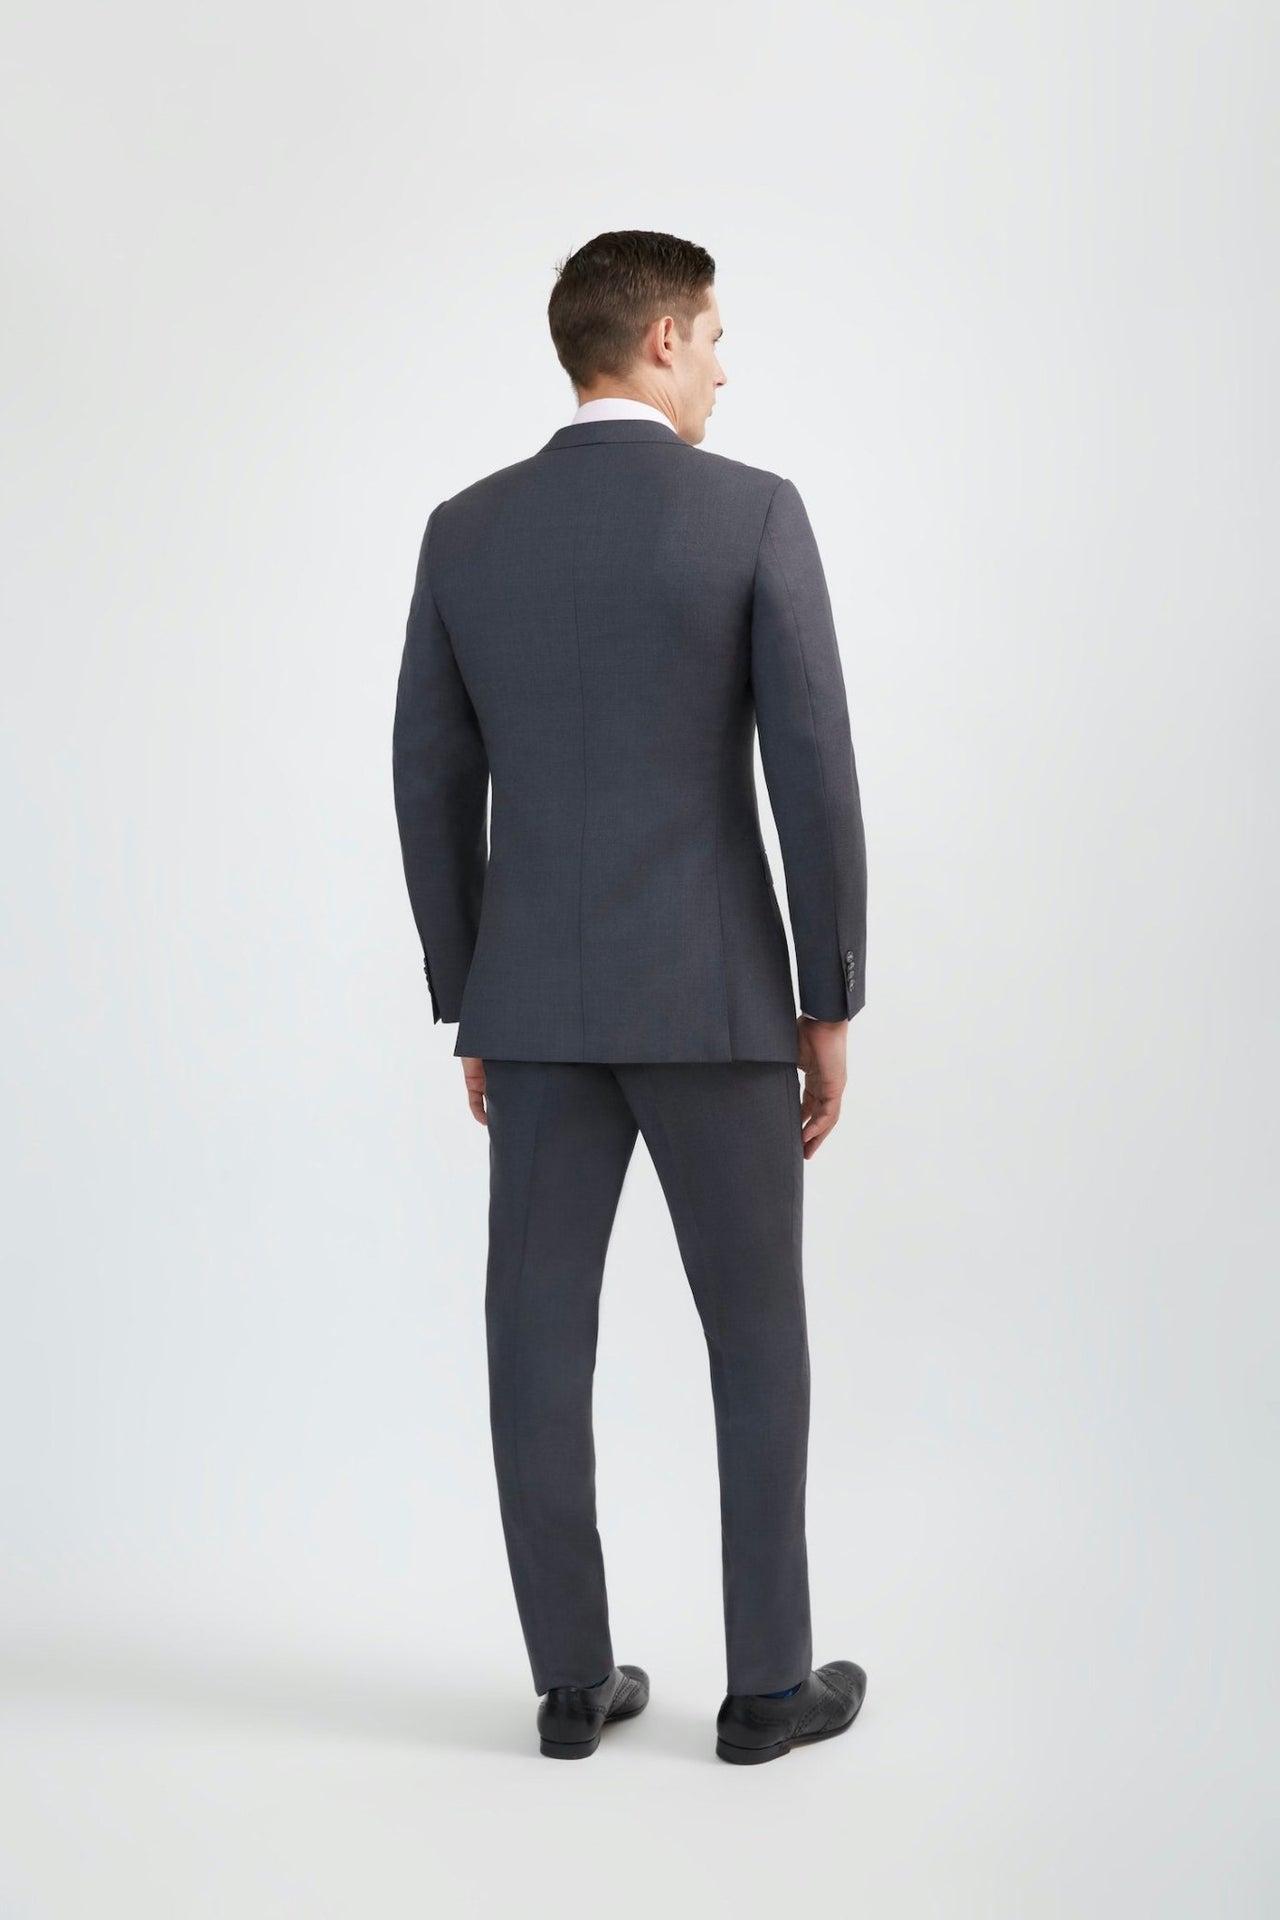 Wedding Suits for Men | Premium suiting for grooms – Uomo Attire